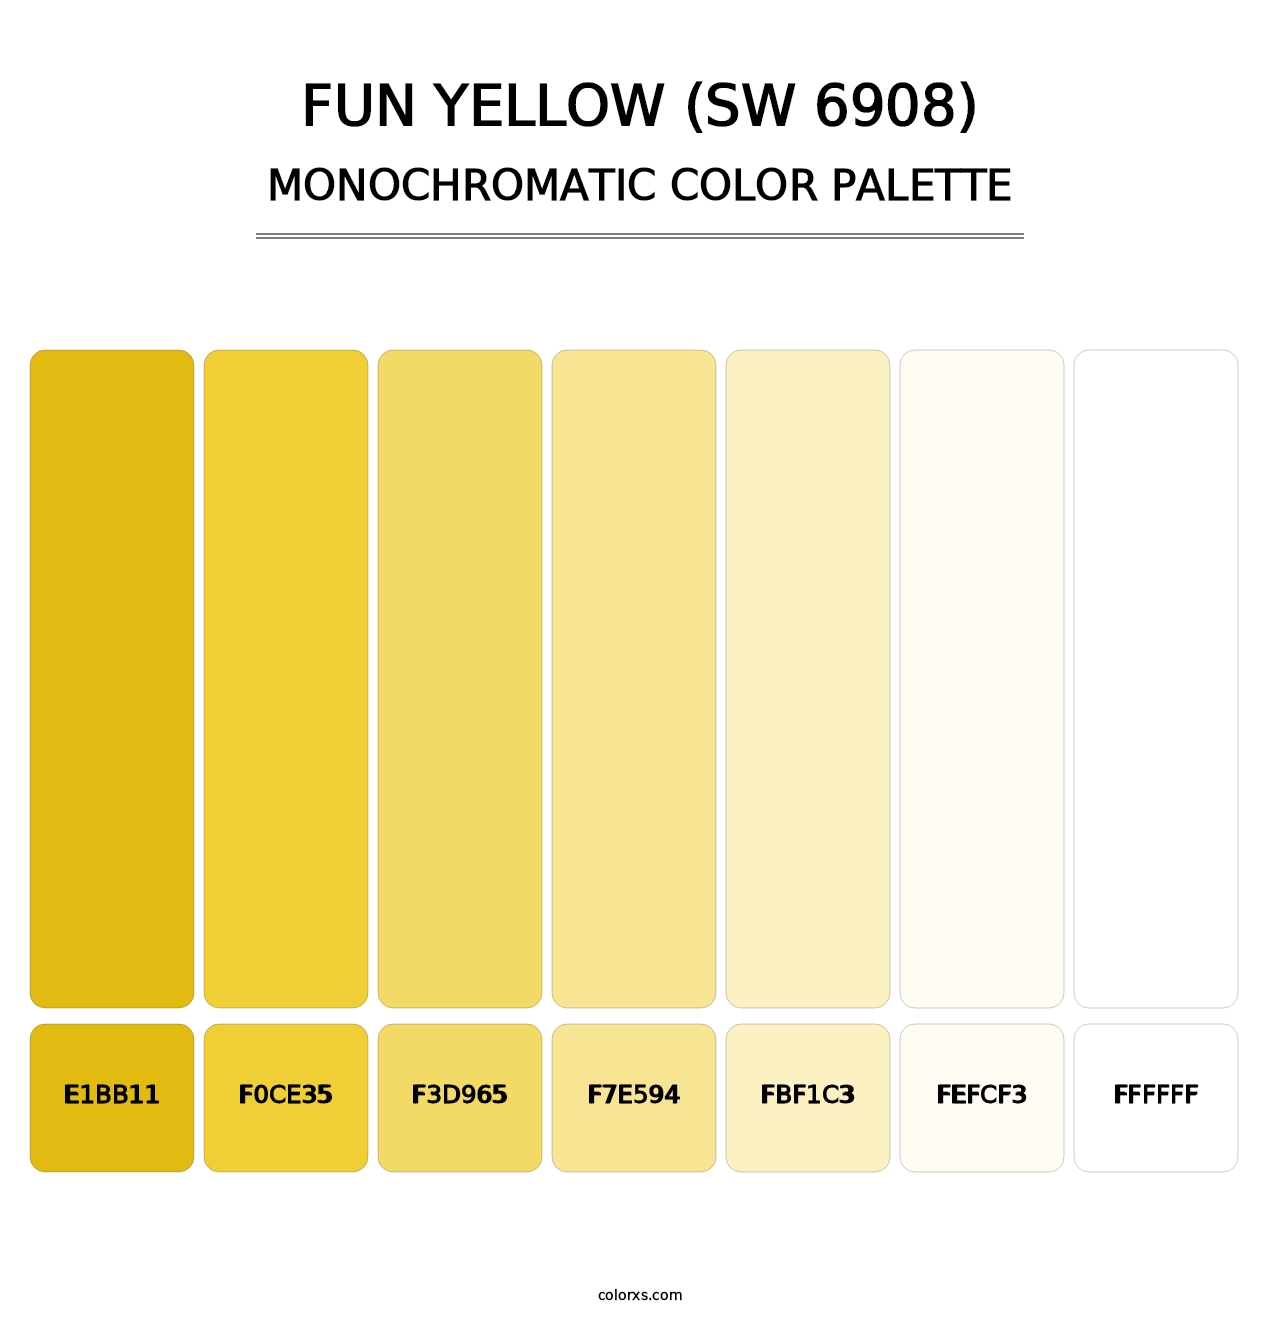 Fun Yellow (SW 6908) - Monochromatic Color Palette